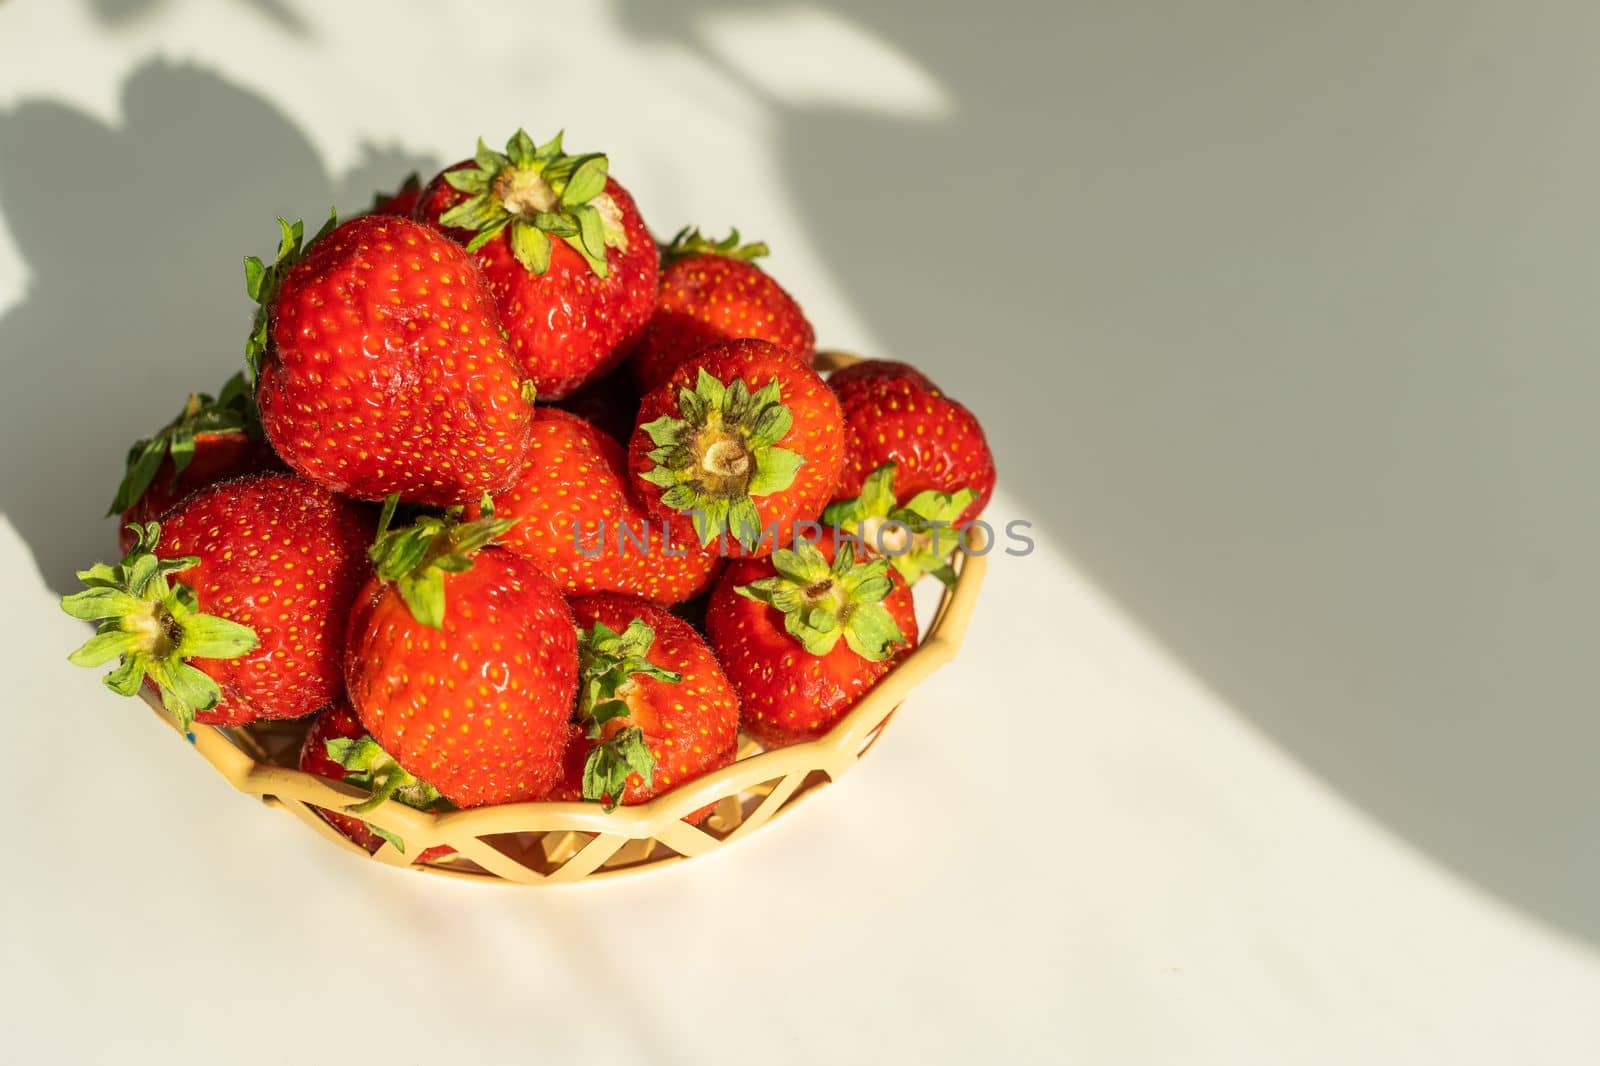 strawberries in a wicker plate.